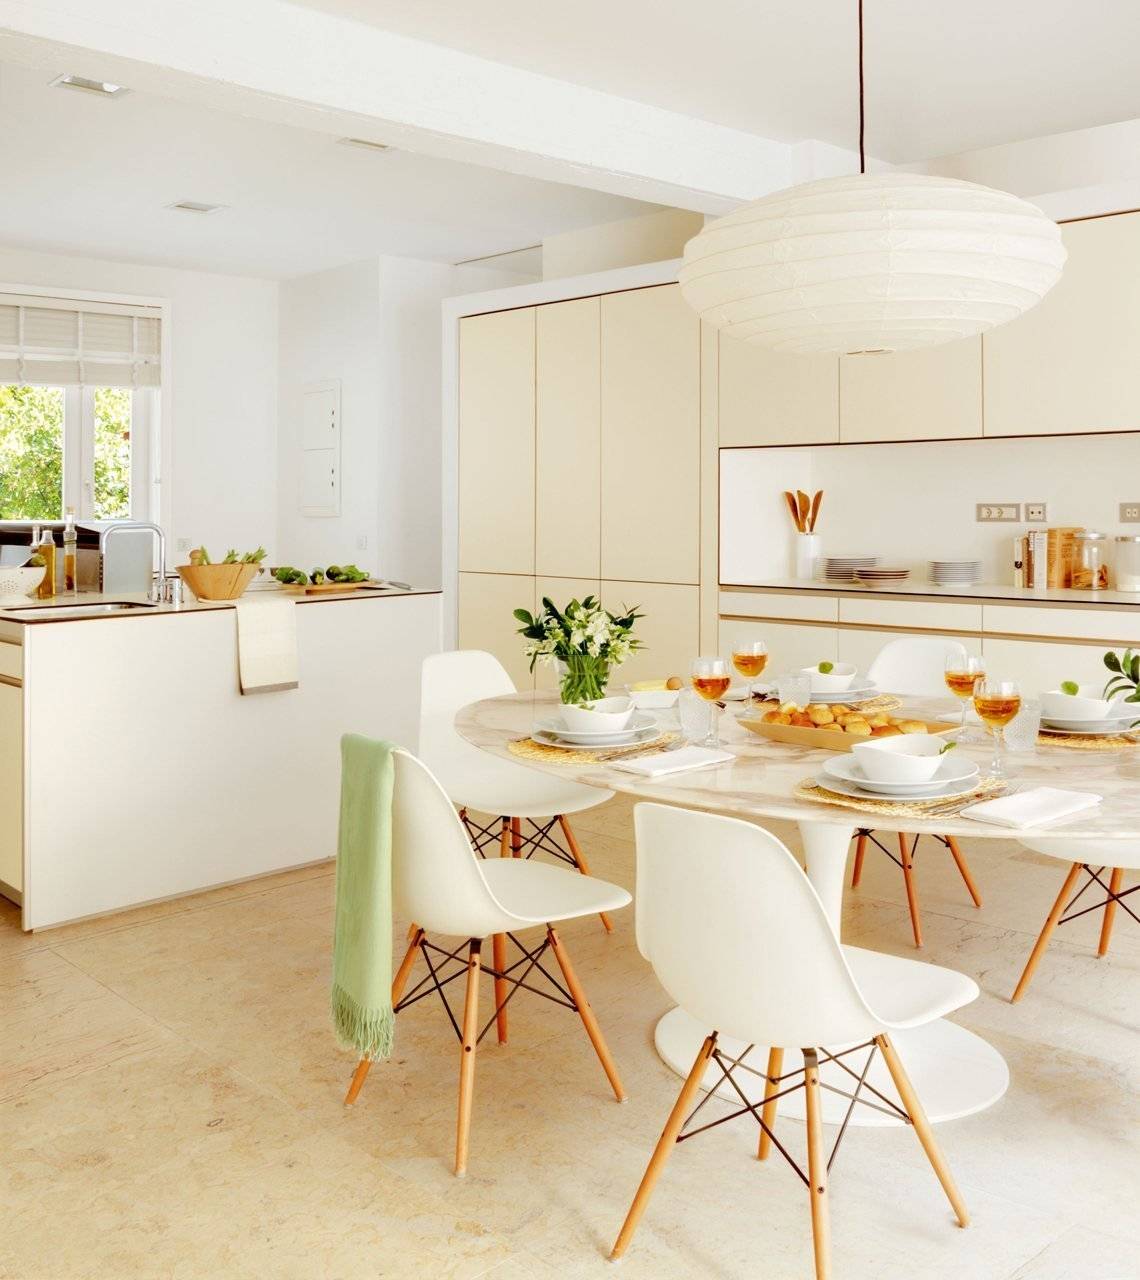 Светлая кухня в современном стиле: белая, бежевая и серая, особенности интерьера, как оформить дизайн, как выбрать мебель, освещение и декор, фото с примерами